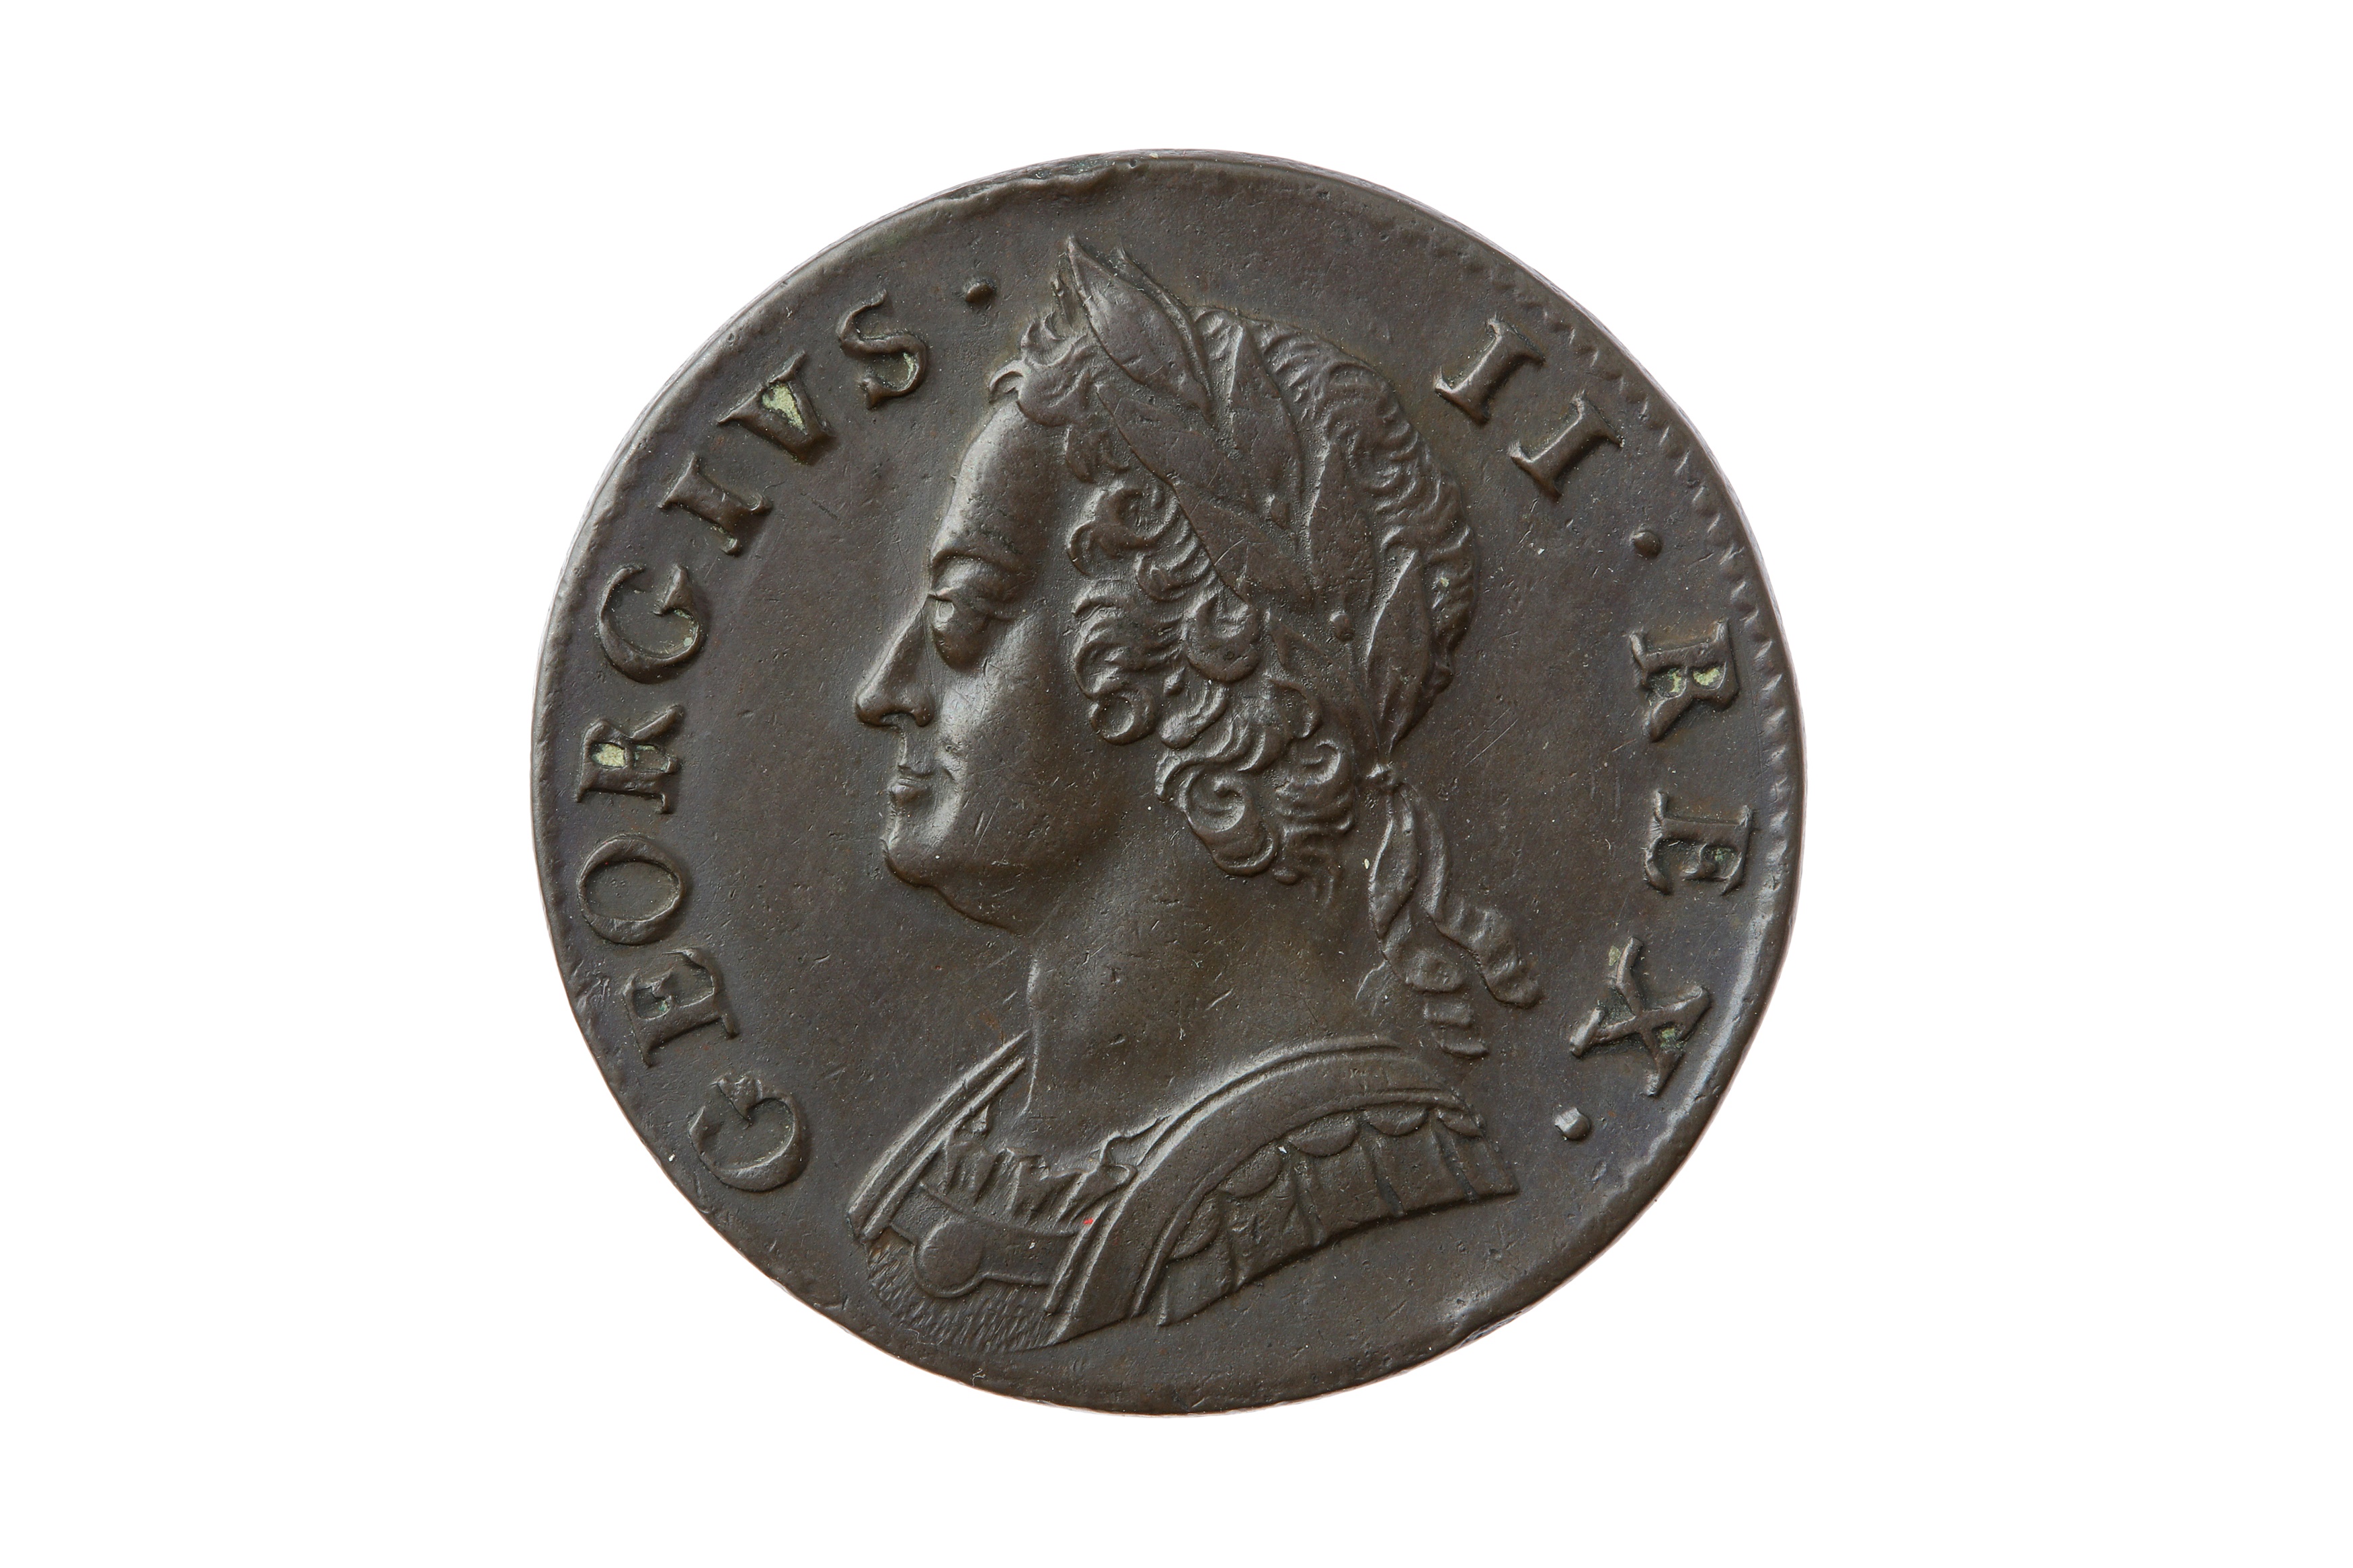 GEORGE II (1727 - 1760), 1747 HALFPENNY.